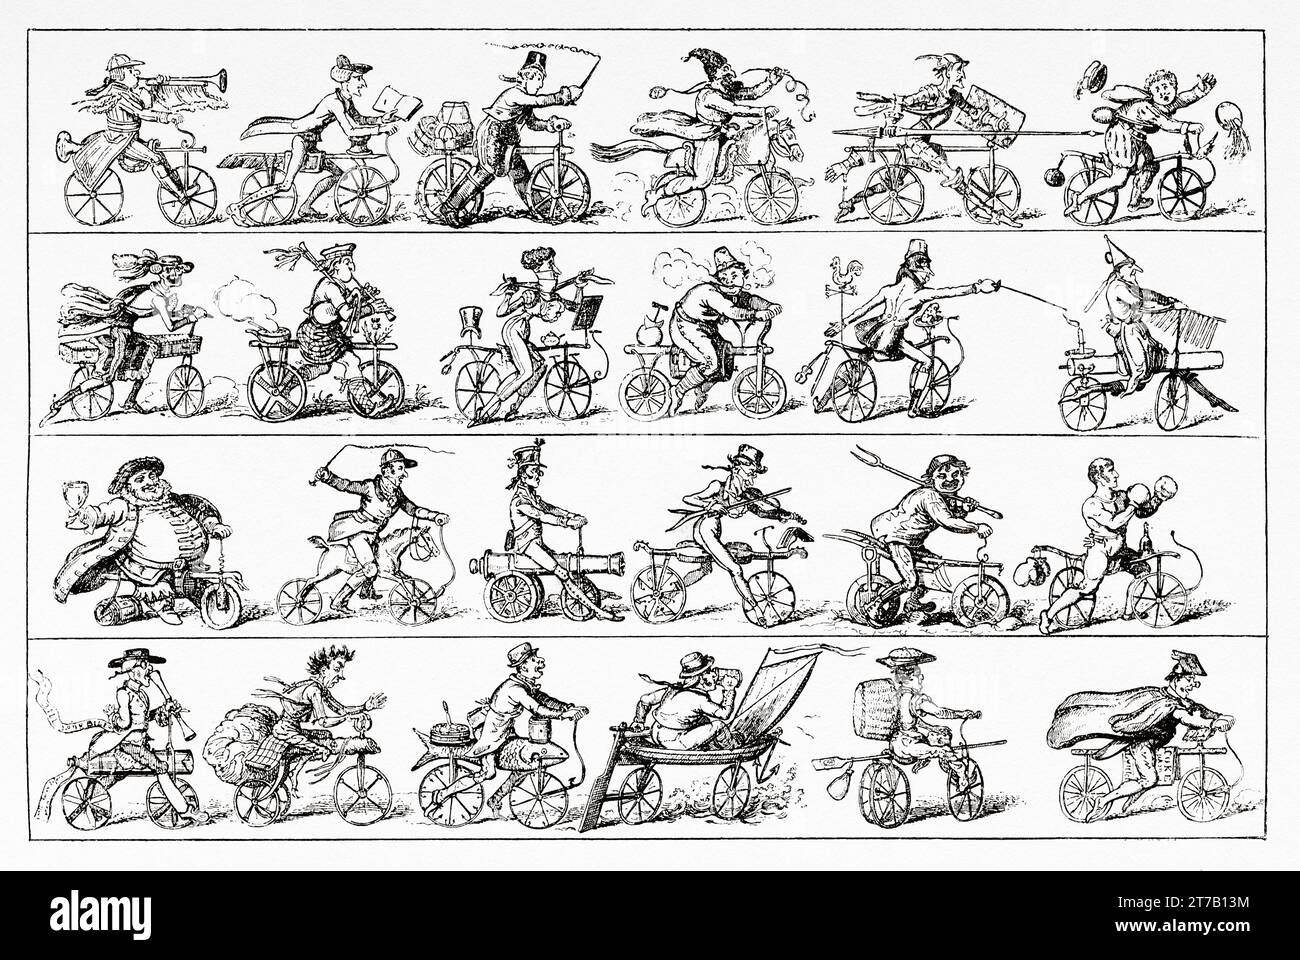 Velocipede. Jeder Mann auf seinem Barsch oder auf der Hobby-Messe. Englischer Zeichentrickfilm, 1819 von George Cruikshanks über die velociped-Manie. Alte Illustration aus La Nature 1887 Stockfoto